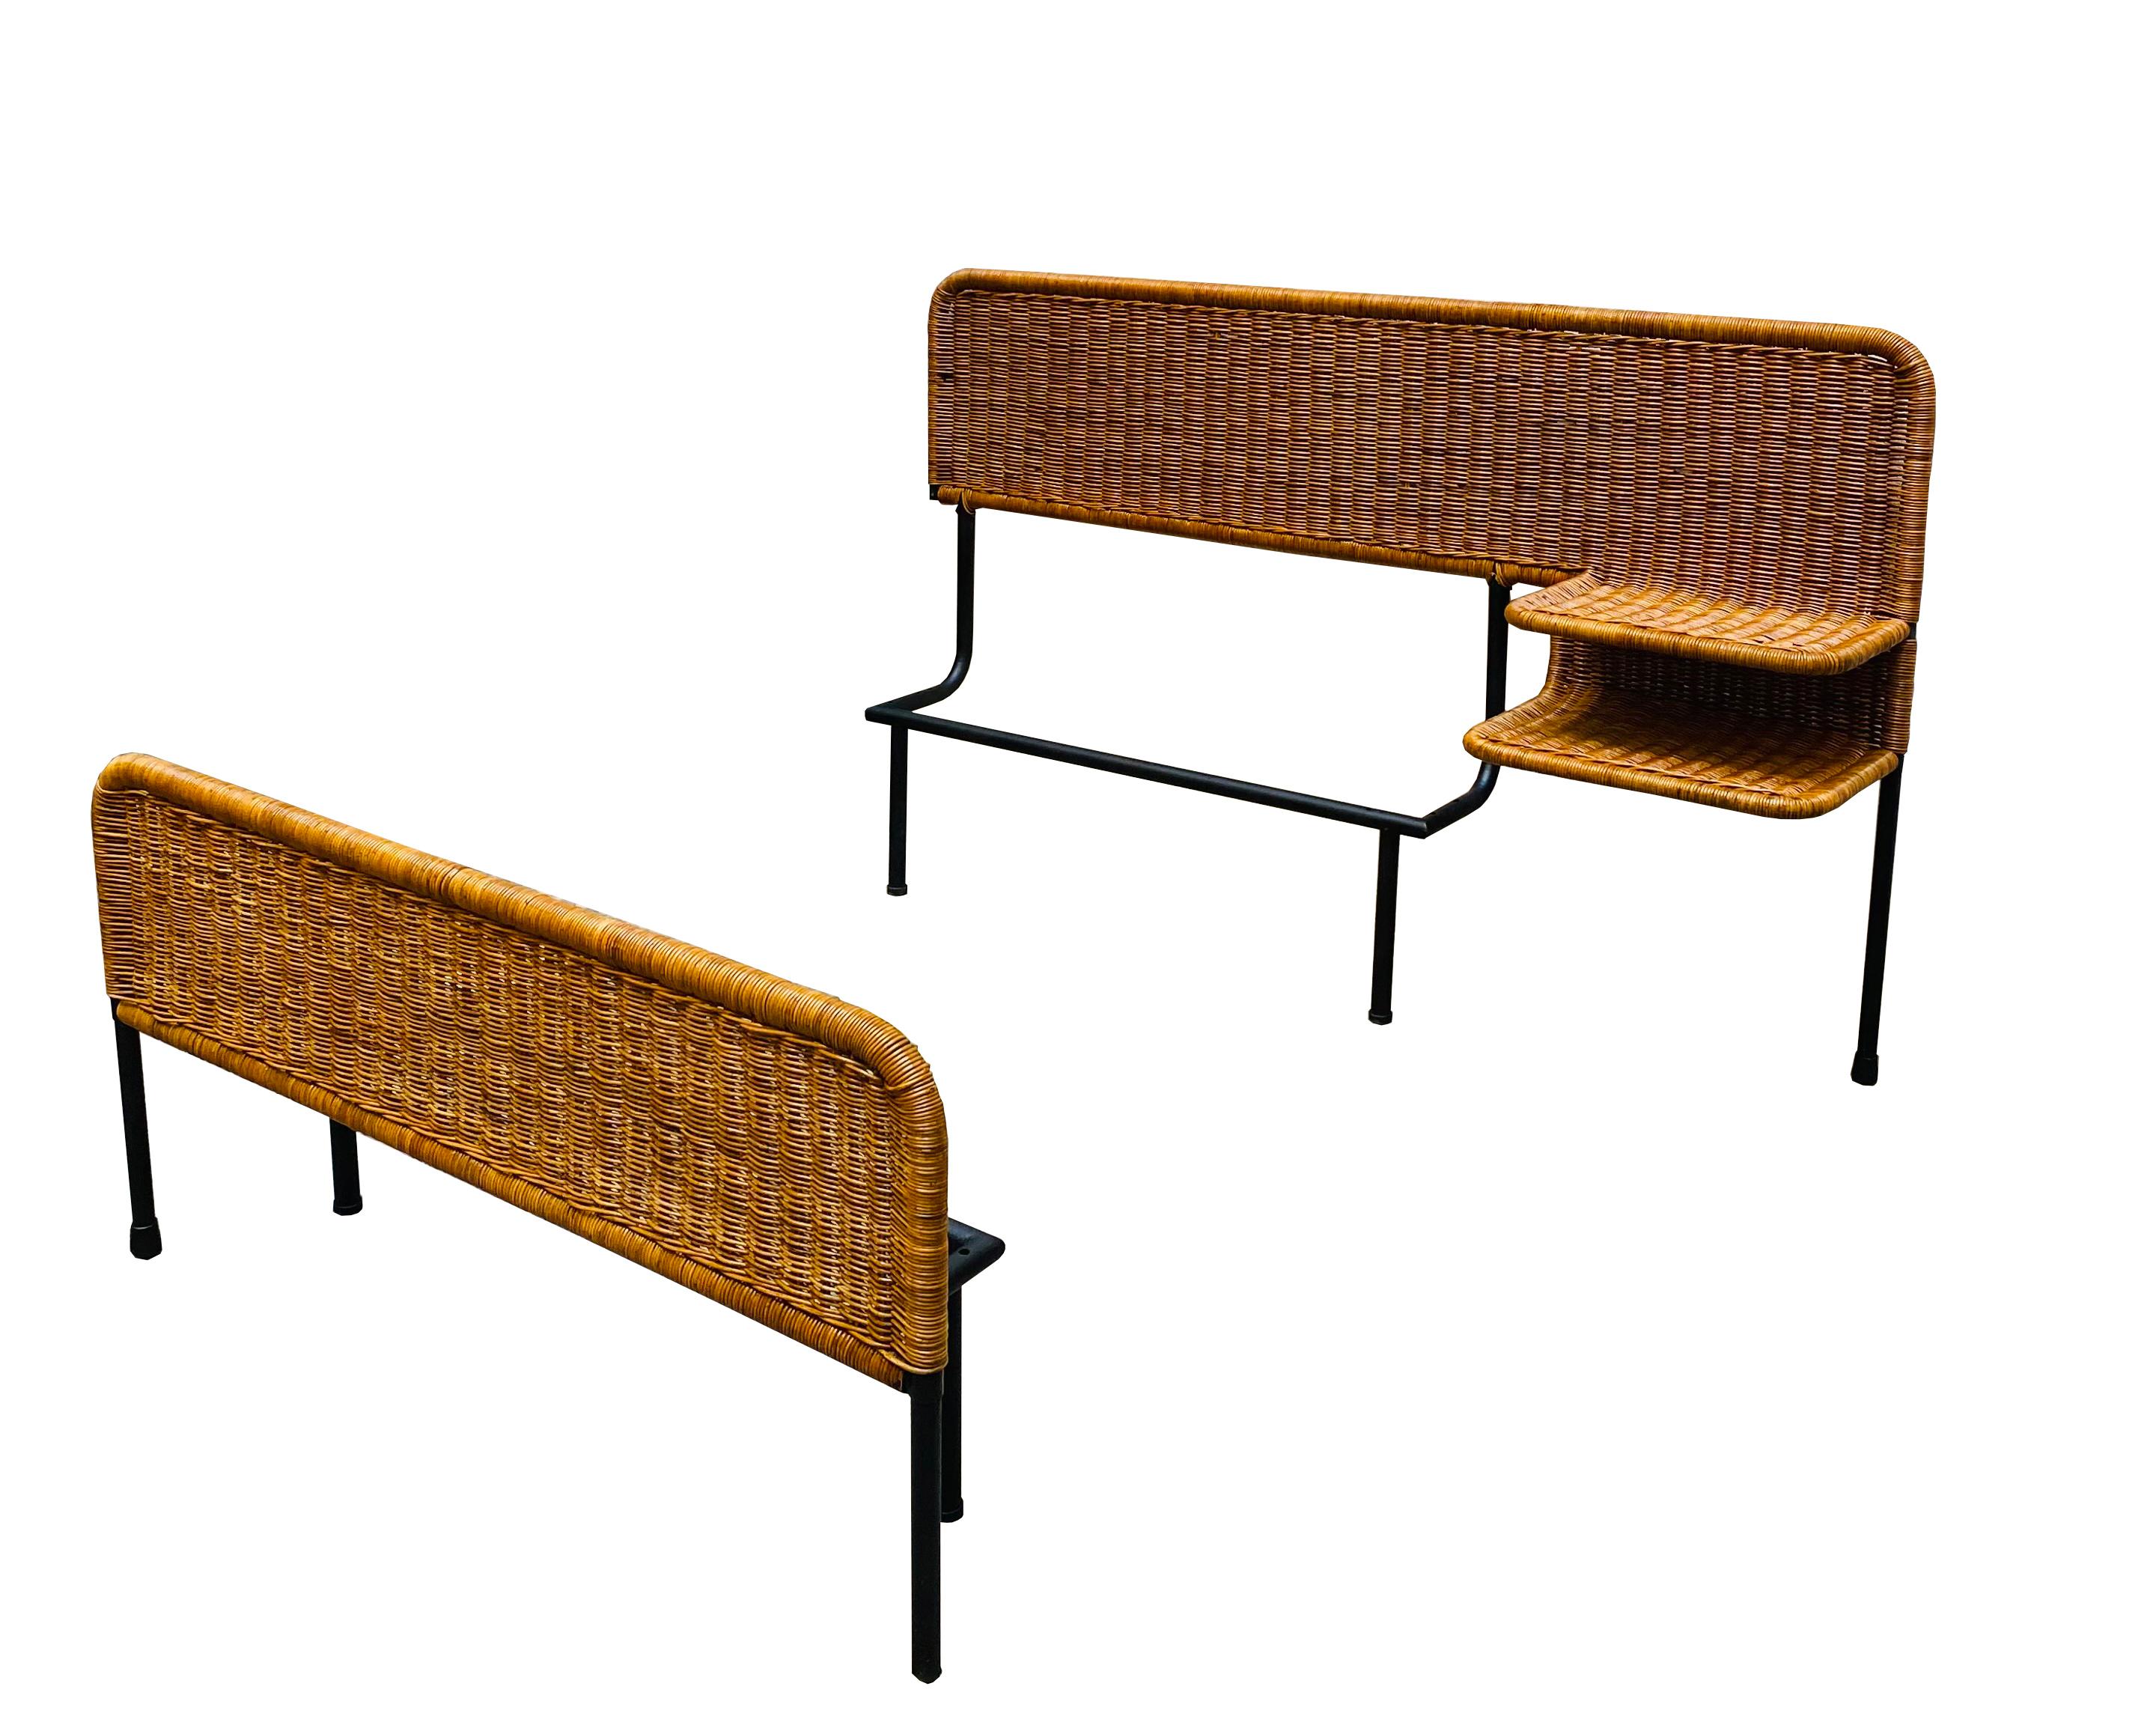 Seltenes Einzelbett aus Bambusgeflecht und italienischem Rattan aus den 1960er Jahren.
Das Möbelstück hat einen Metallrahmen und einen integrierten Nachttisch mit zwei Ablageflächen.
Das Bett ist in einem sehr guten Zustand, Abnutzungserscheinungen